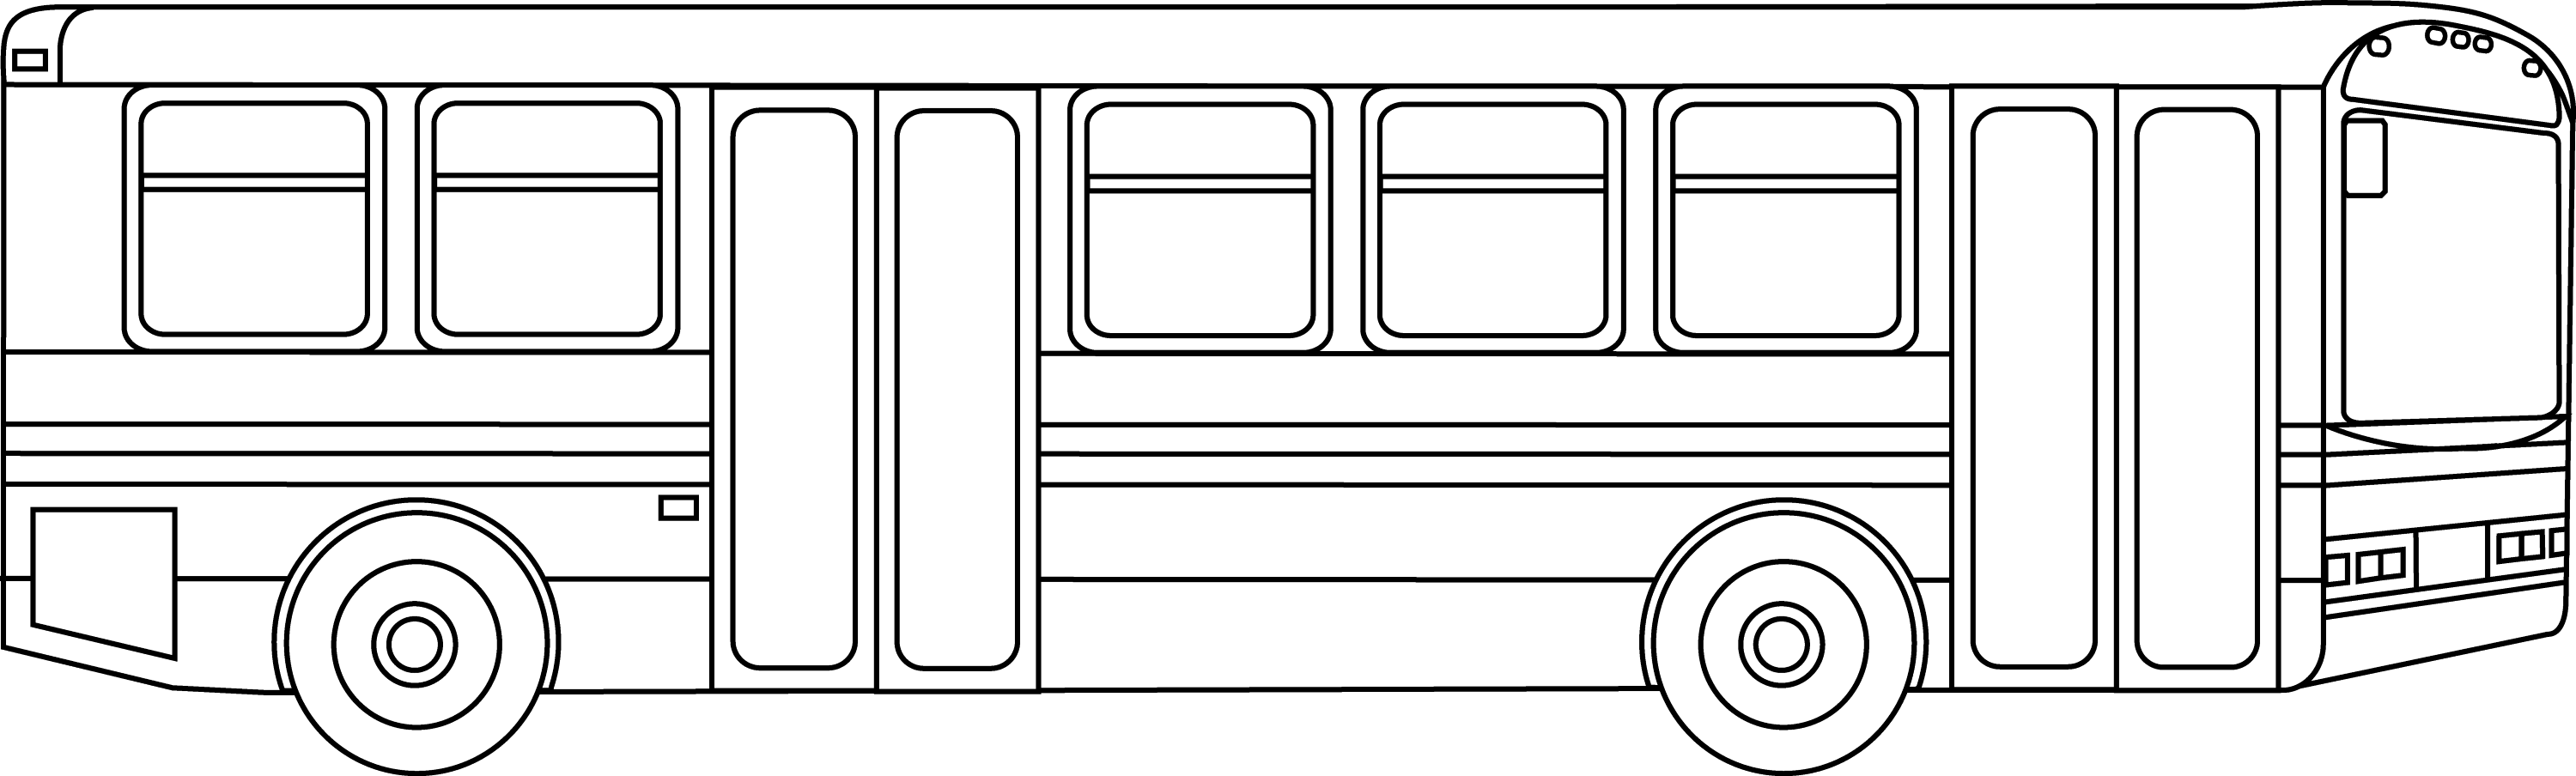 clipart school bus outline - photo #14